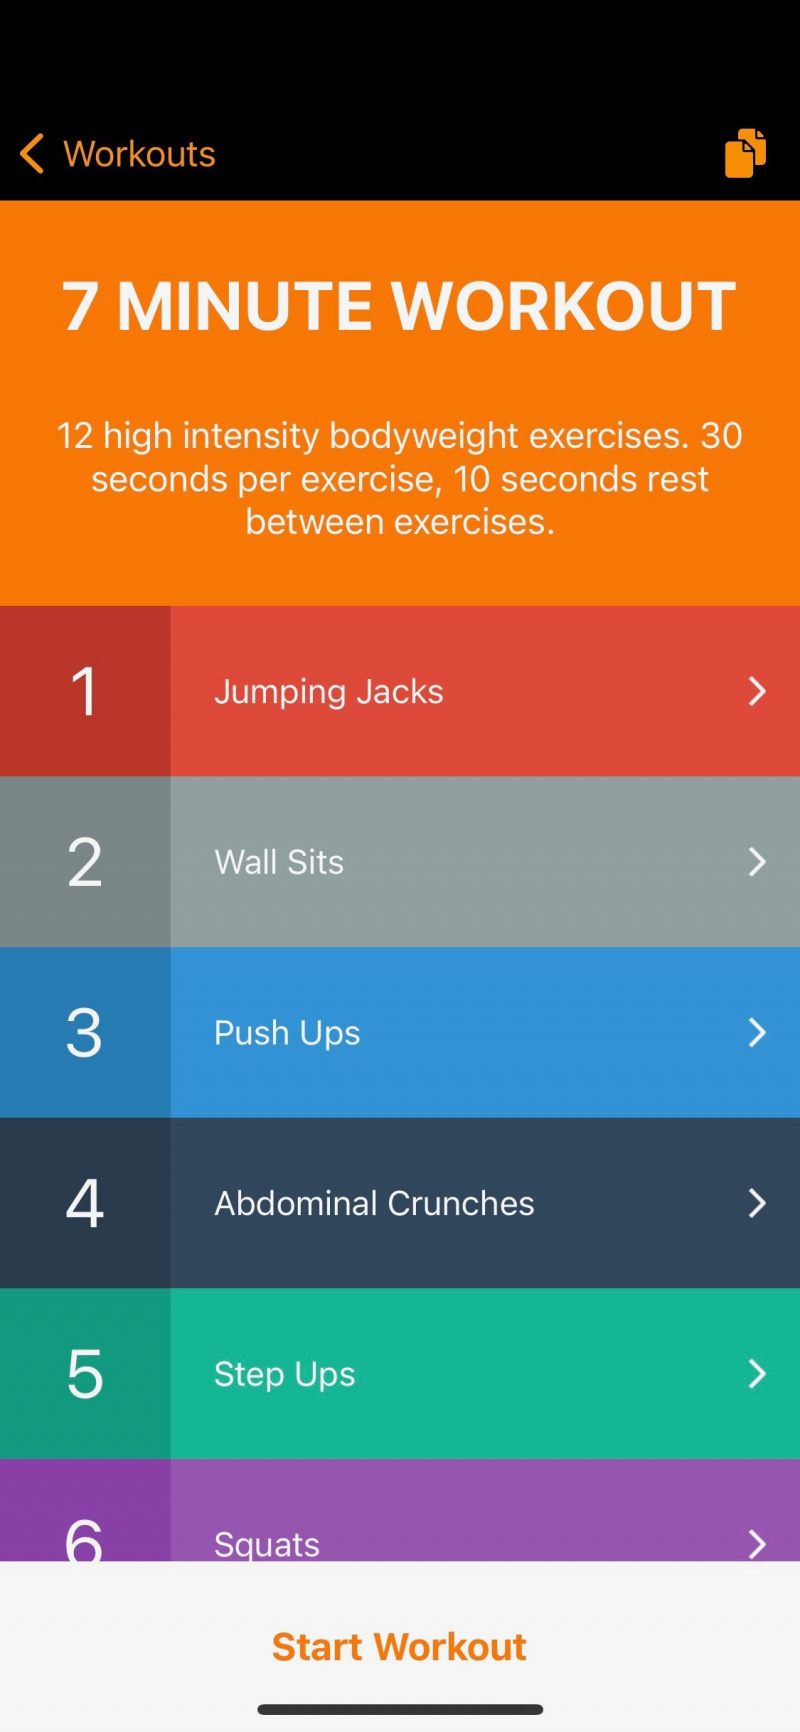   Captura de pantalla de la aplicación 7 Minute Workout que muestra ejercicios dentro de un entrenamiento